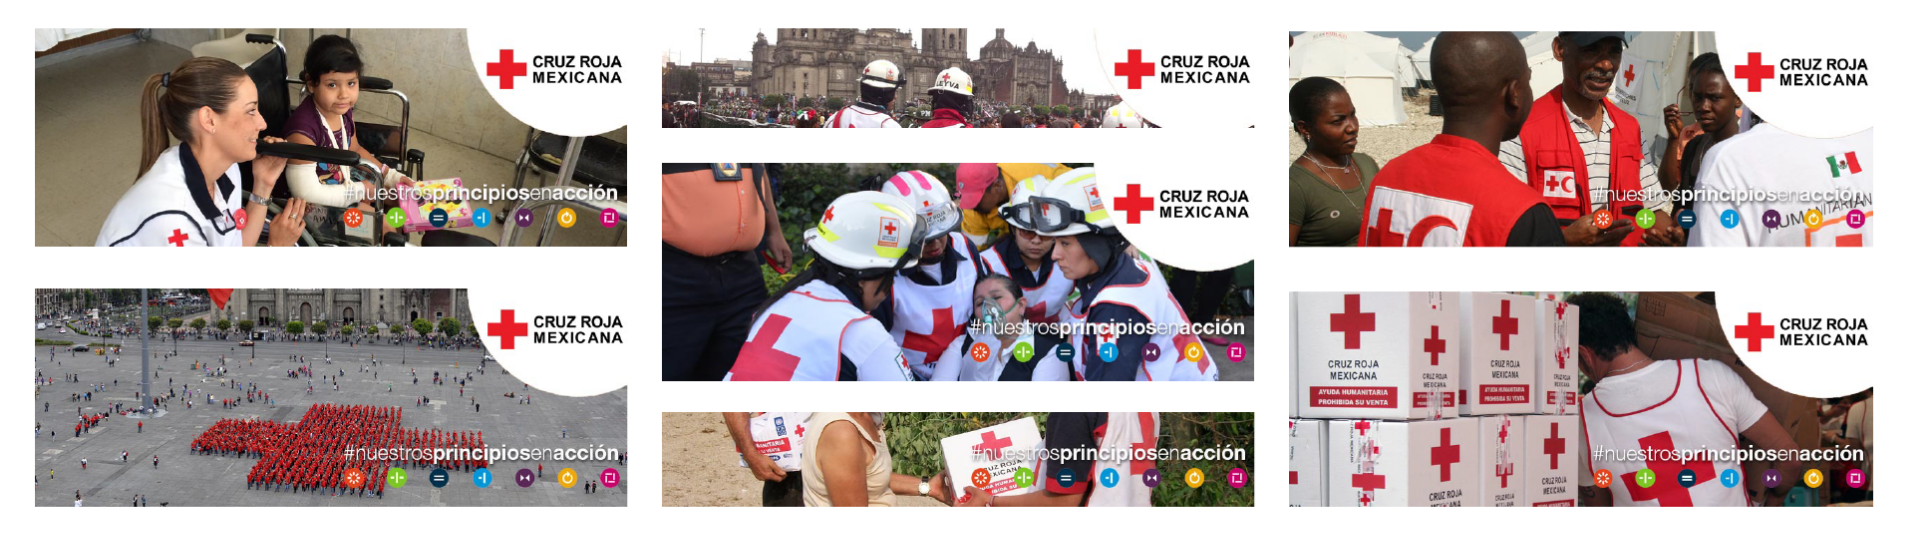 7 Principios de la Cruz Roja